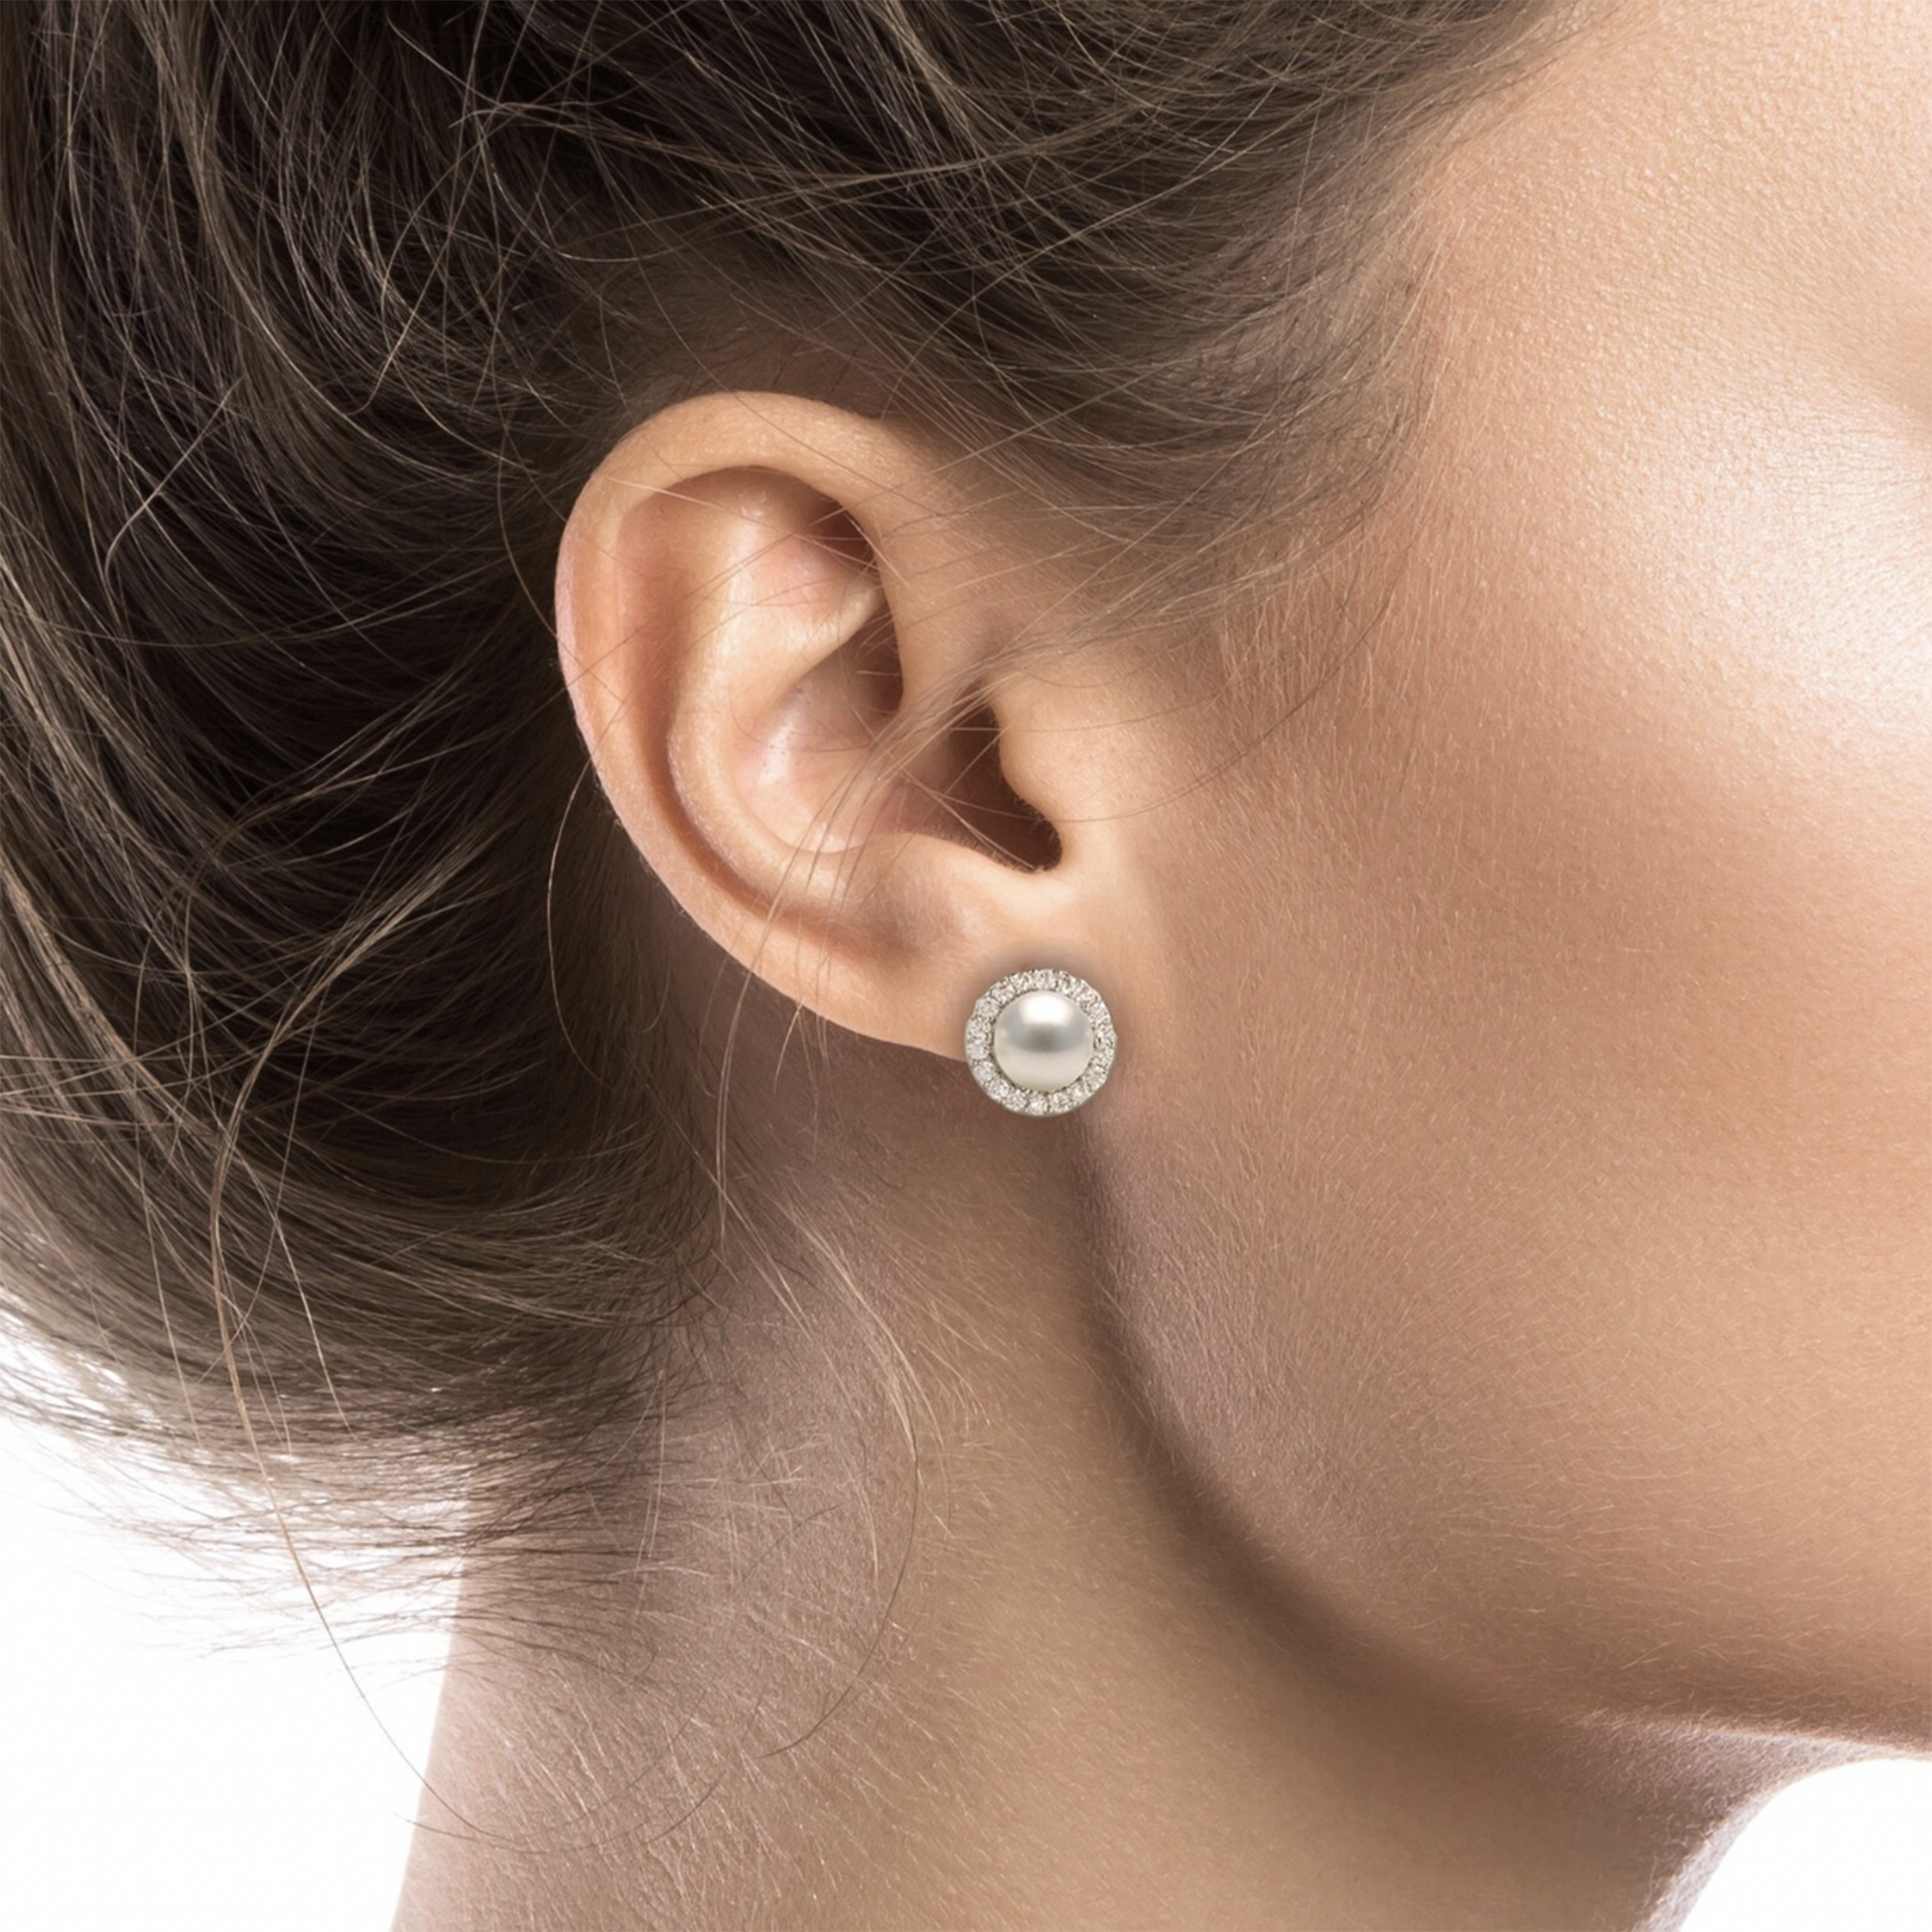 Pearl halo stud earrings silver